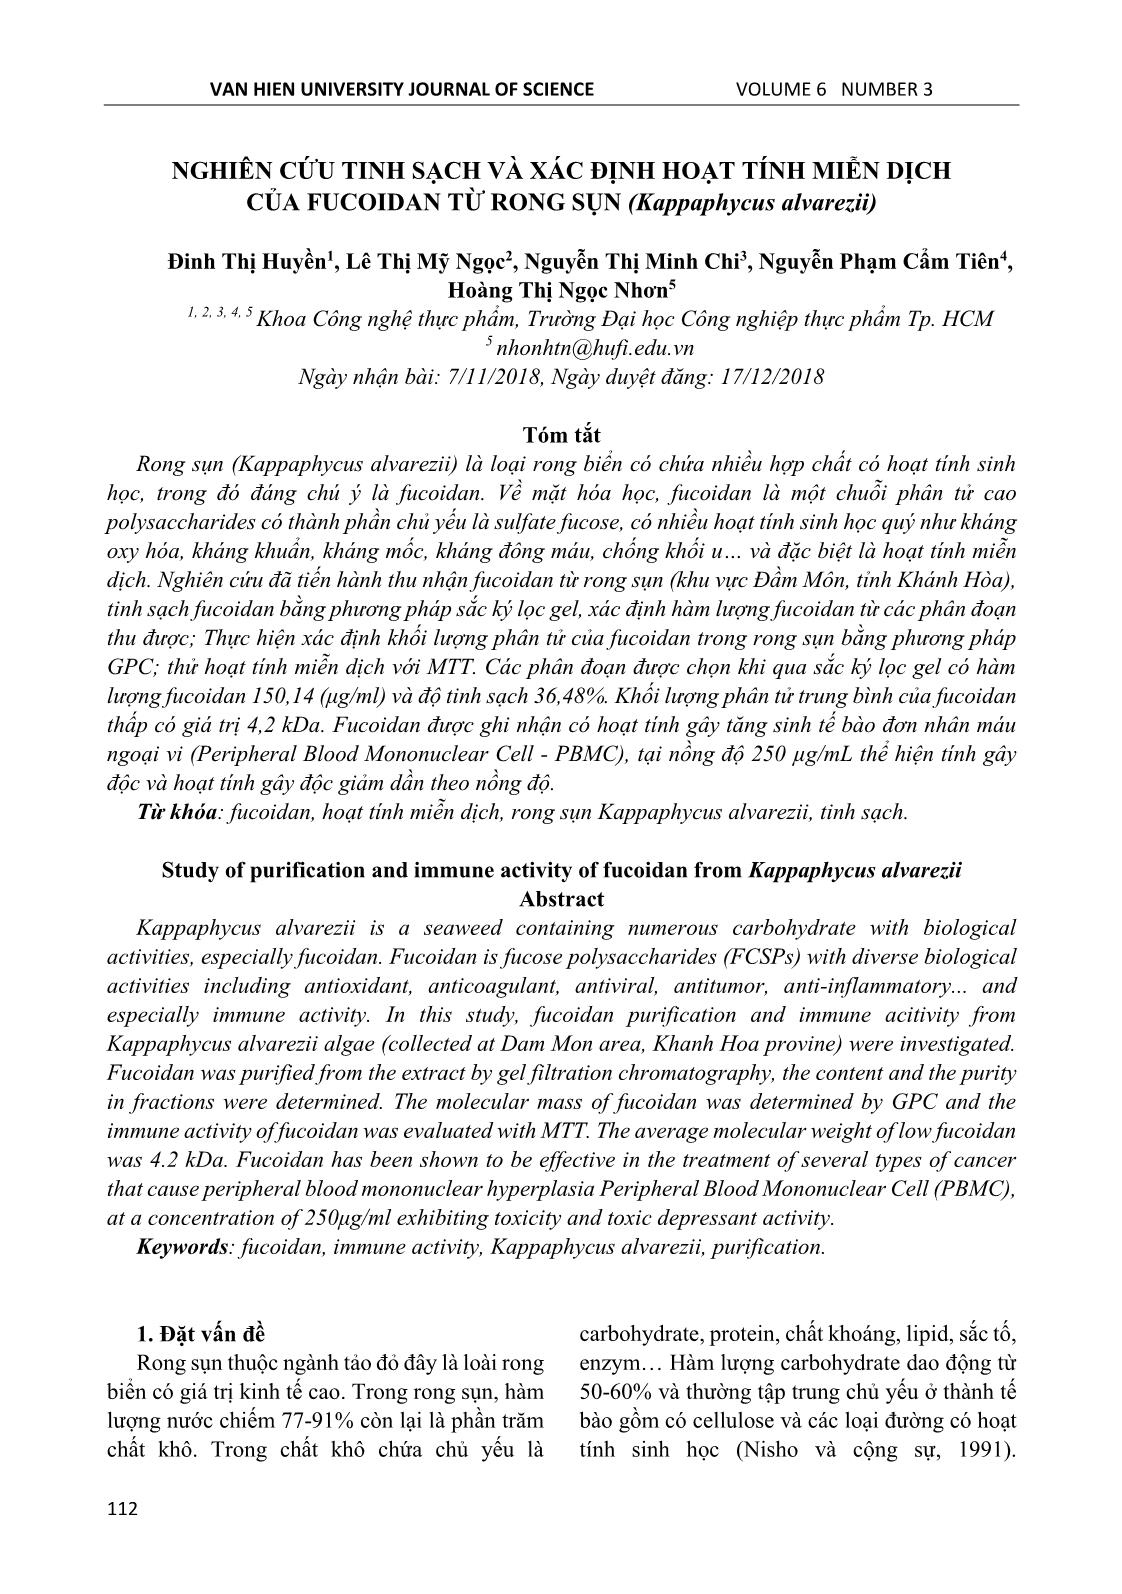 Nghiên cứu tinh sạch và xác định hoạt tính miễn dịch của fucoidan từ rong sụn (kappaphycus alvarezii) trang 1